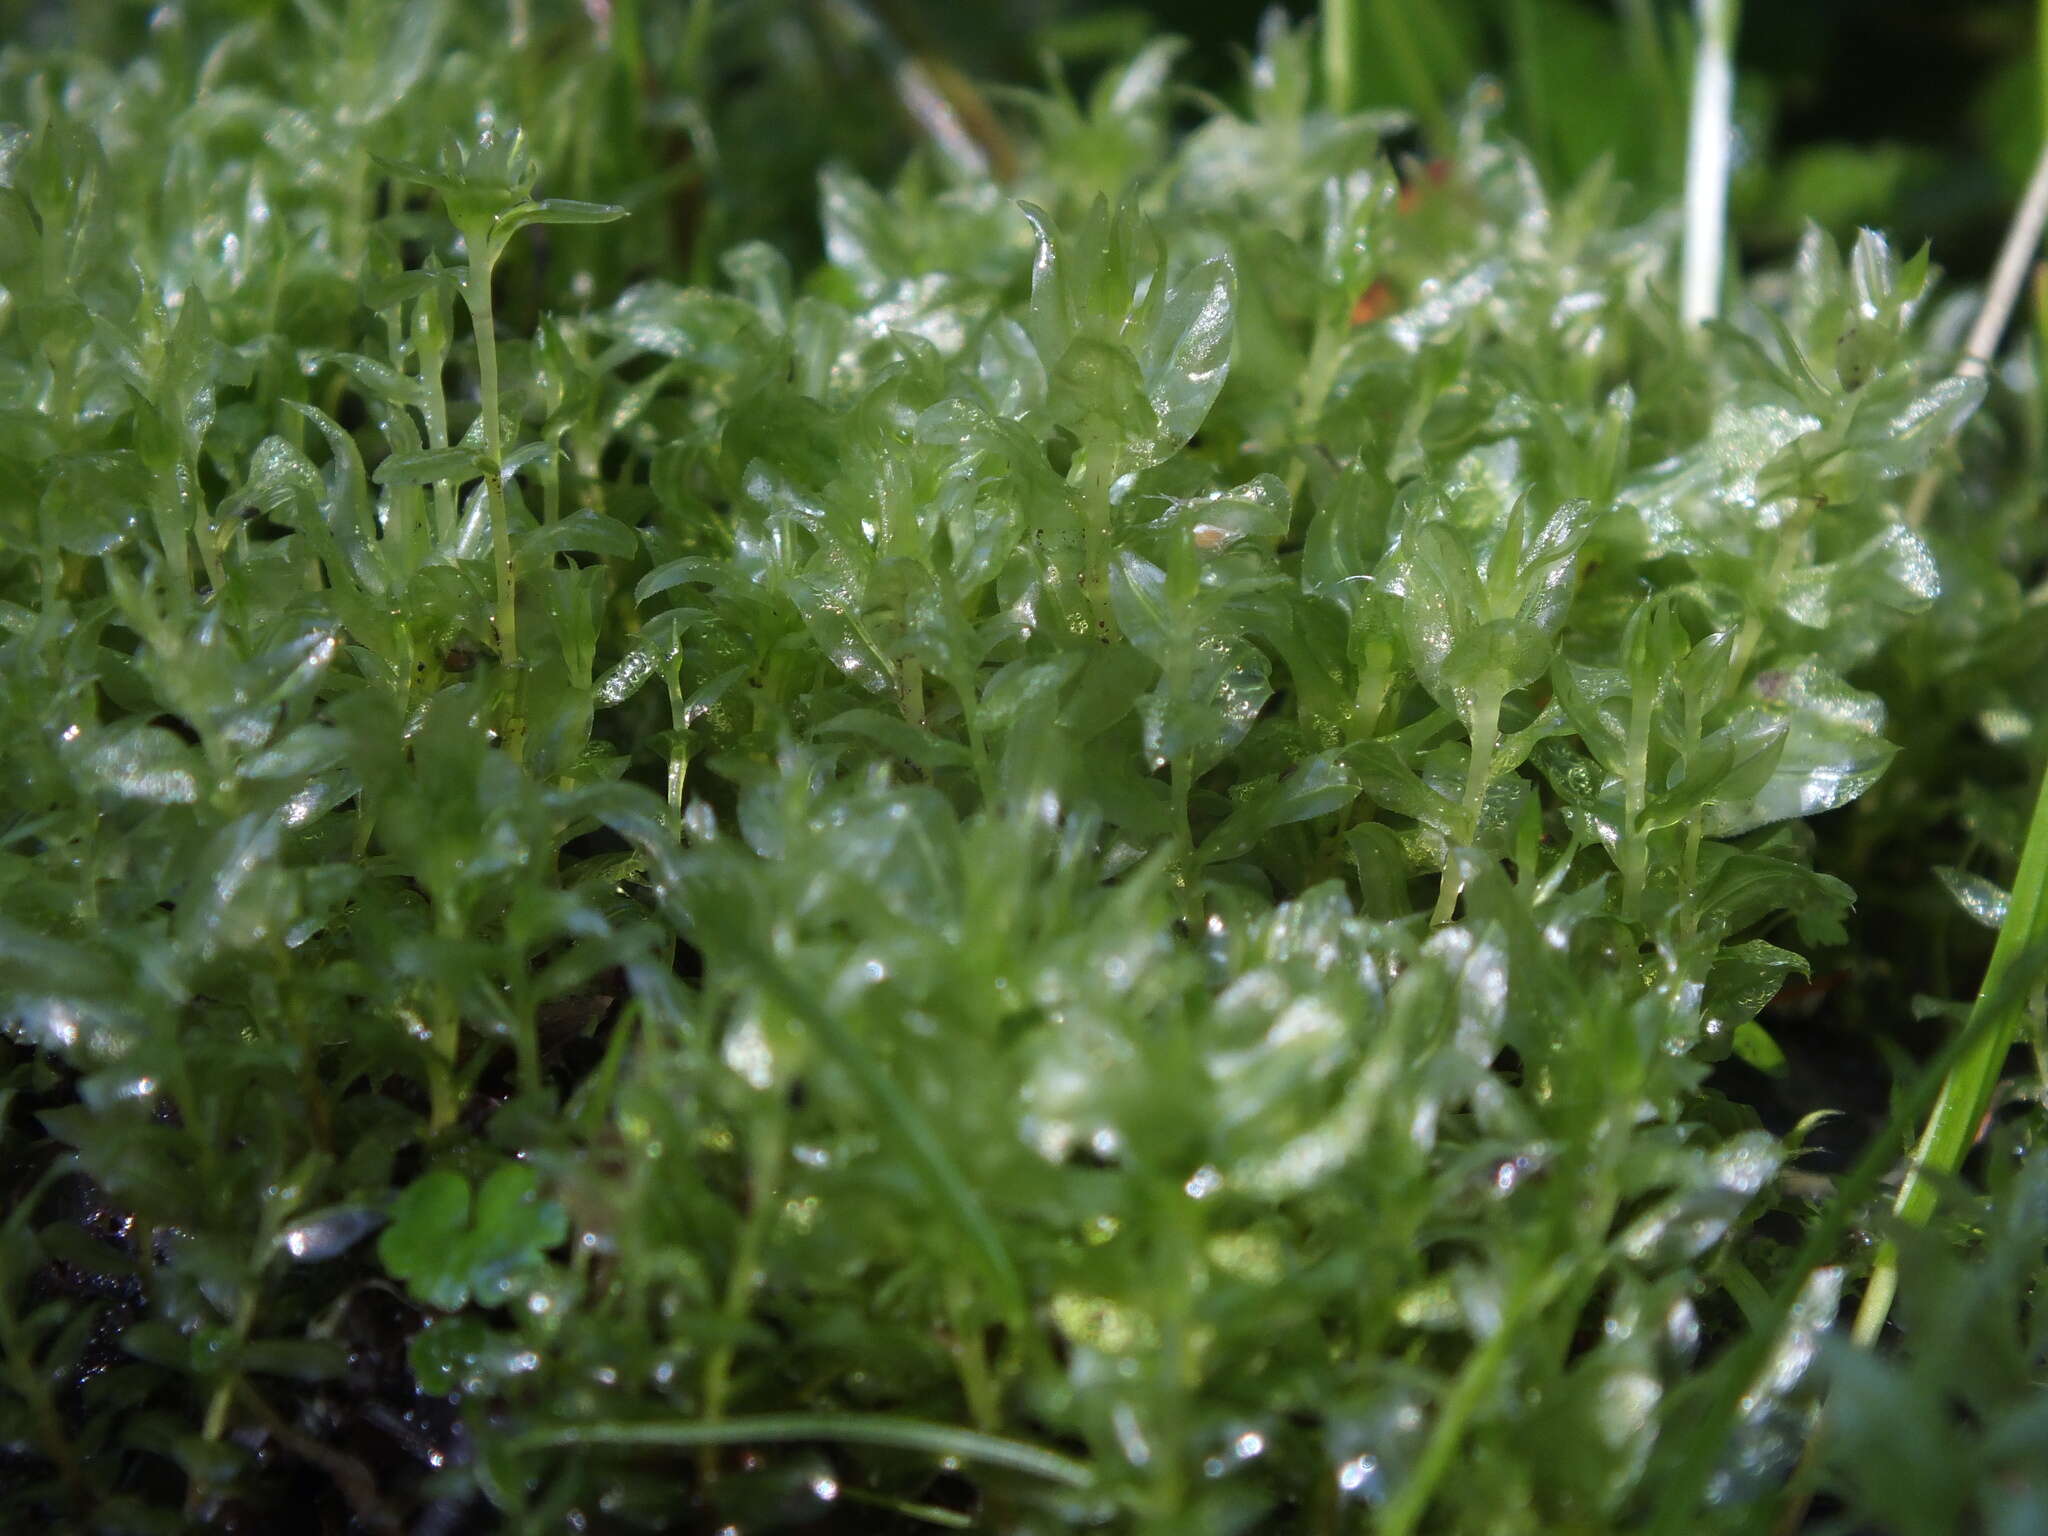 Image of elliptic plagiomnium moss